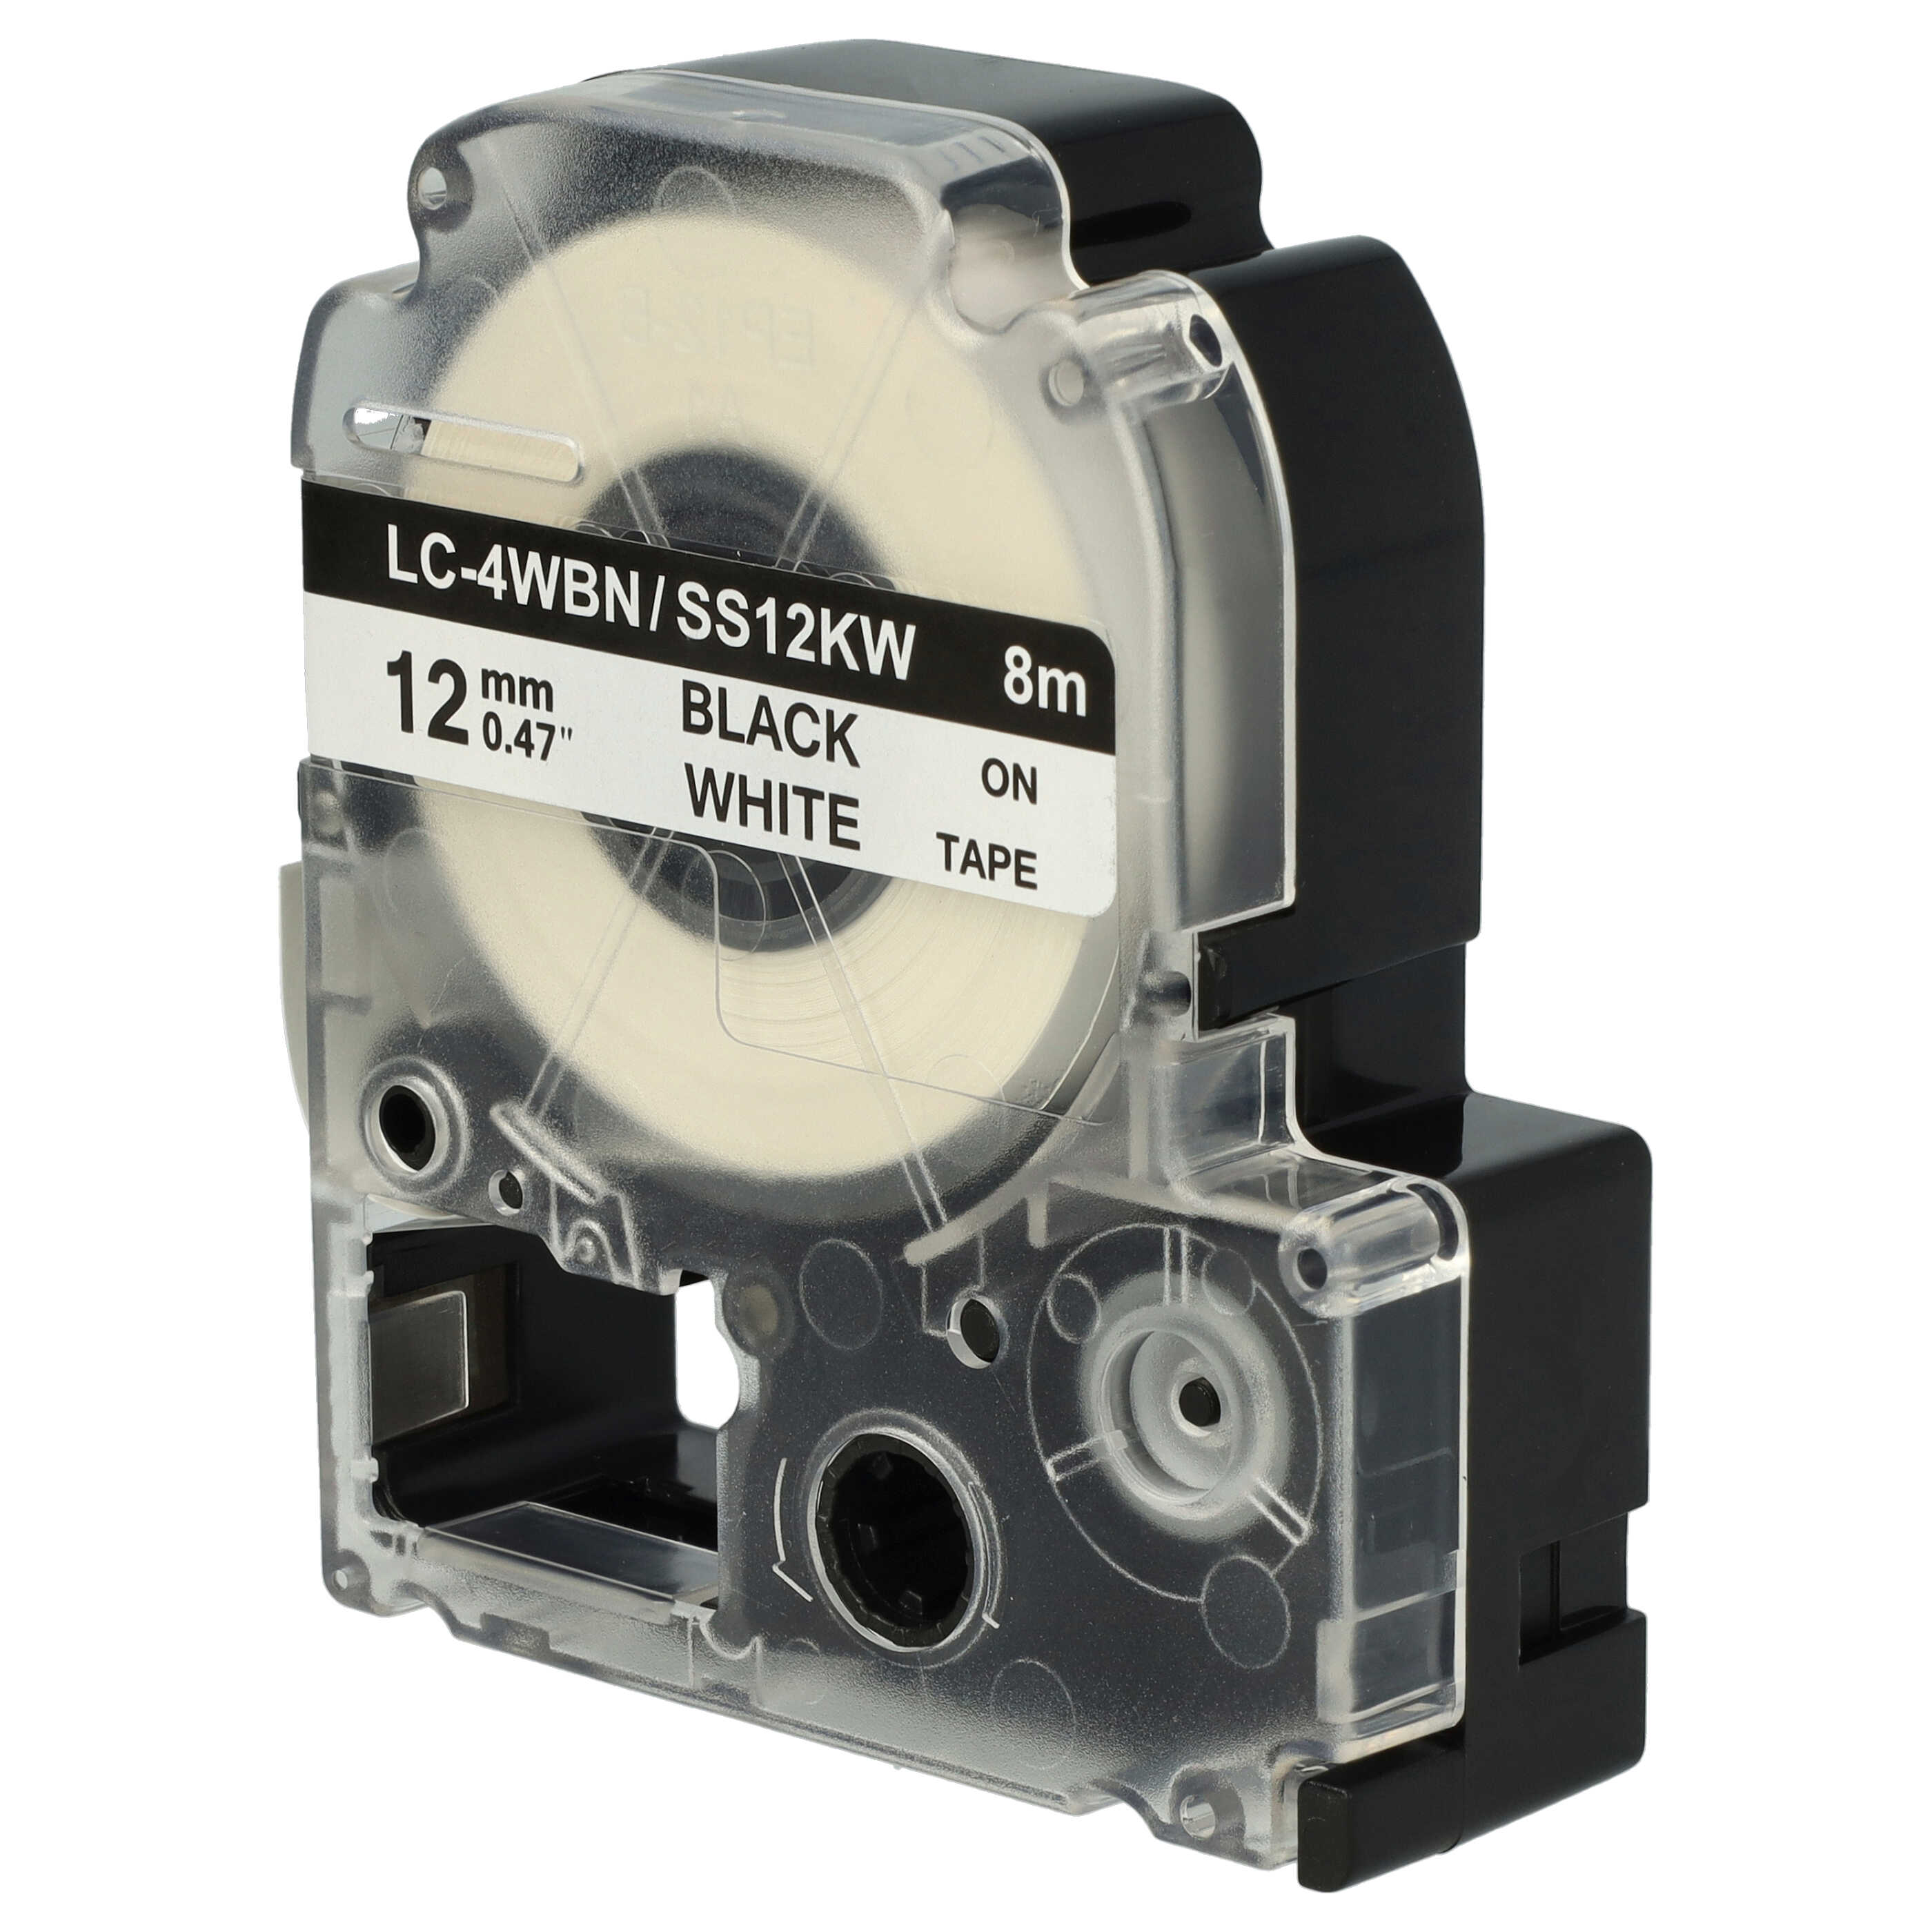 10x Cassetta nastro sostituisce Epson SS12KW, LC-4WBN per etichettatrice Epson 12mm nero su bianco